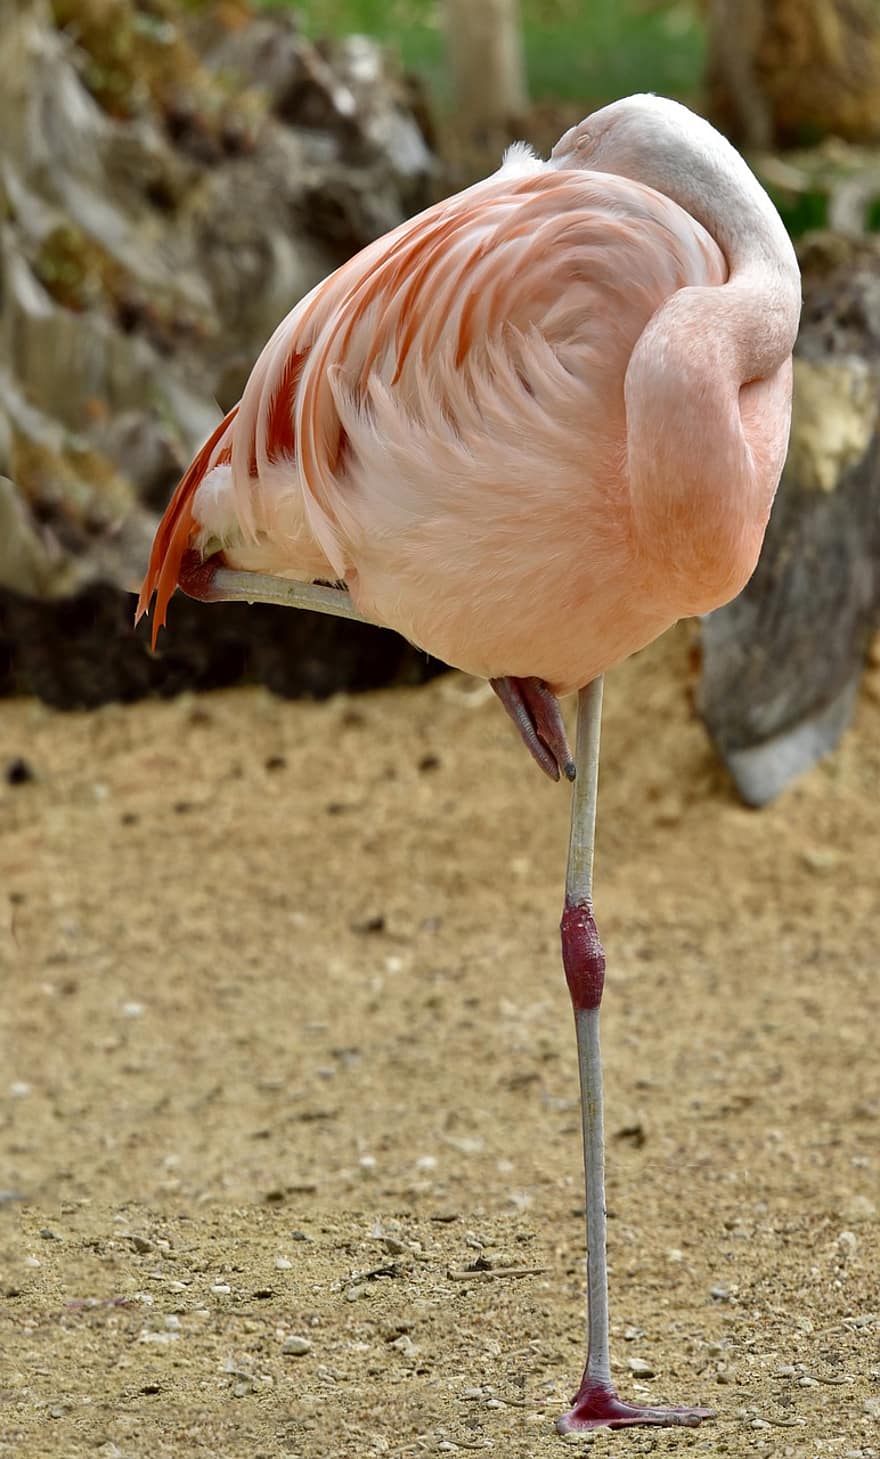 flamingo, Rosa, pássaro, pássaro rosa, penas cor de rosa, plumagem rosa, penas, pernas compridas, pássaro de pernas longas, natureza, pássaro exótico